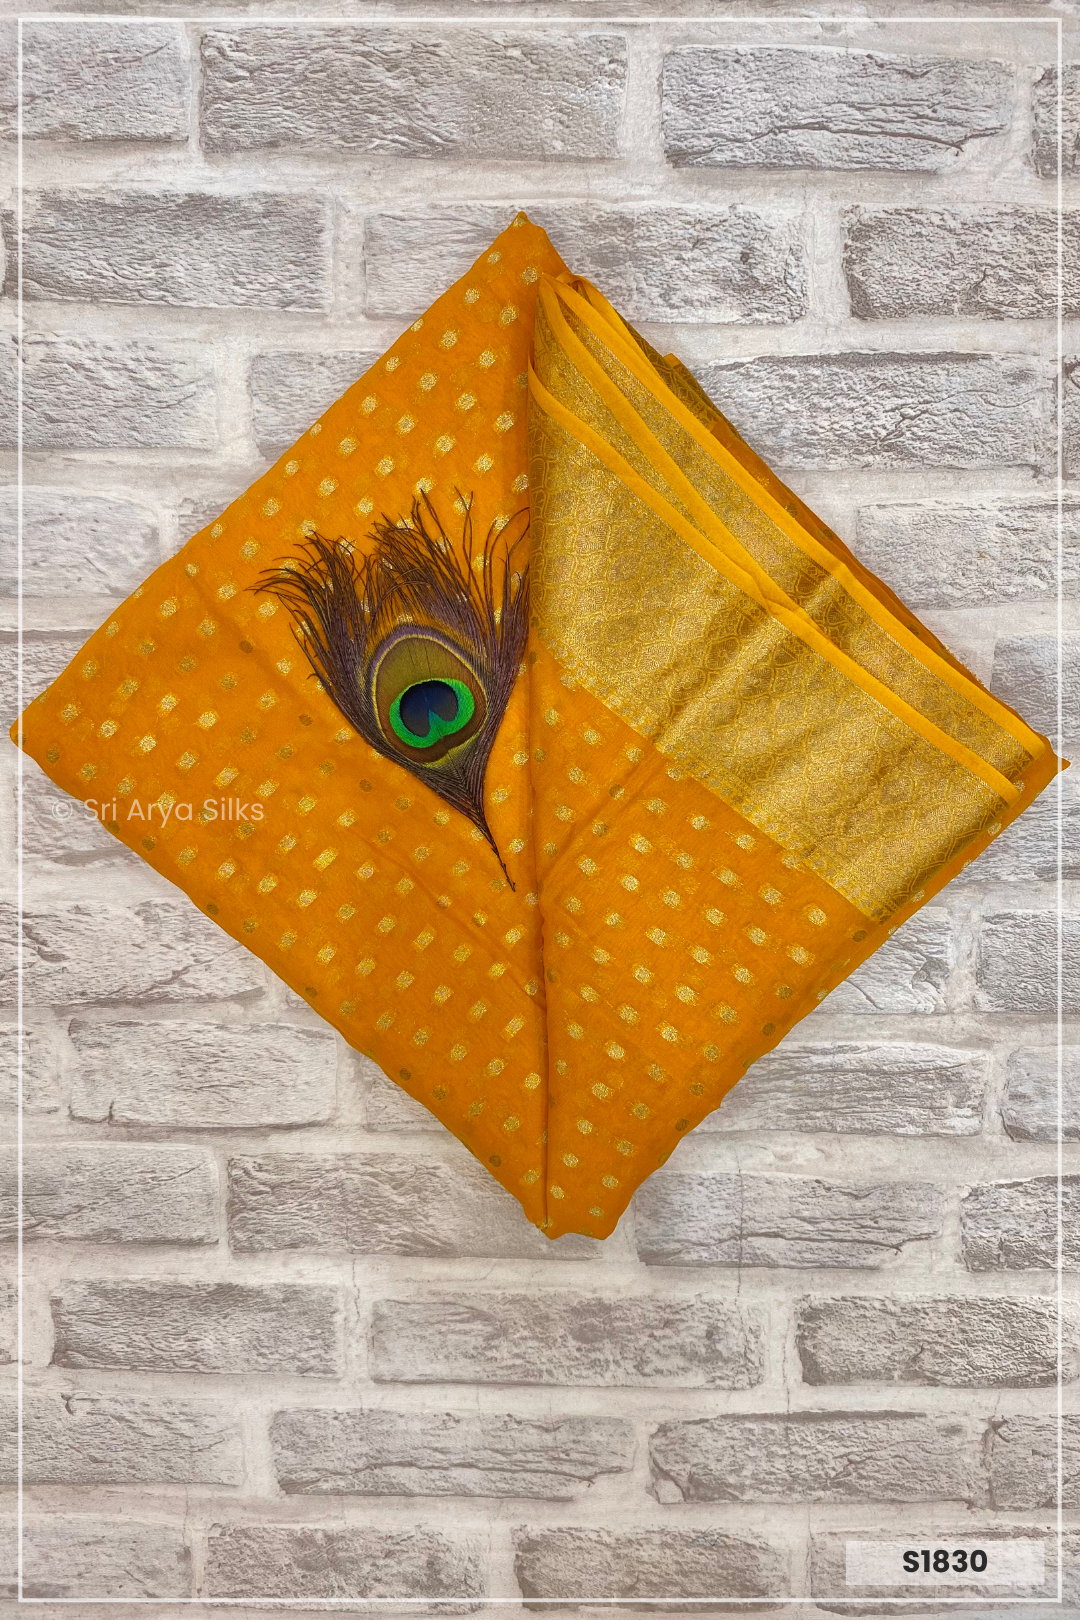 Mustard Yellow Georgette Banarasi  Saree With Yellow Blouse & Banarasi Pattern